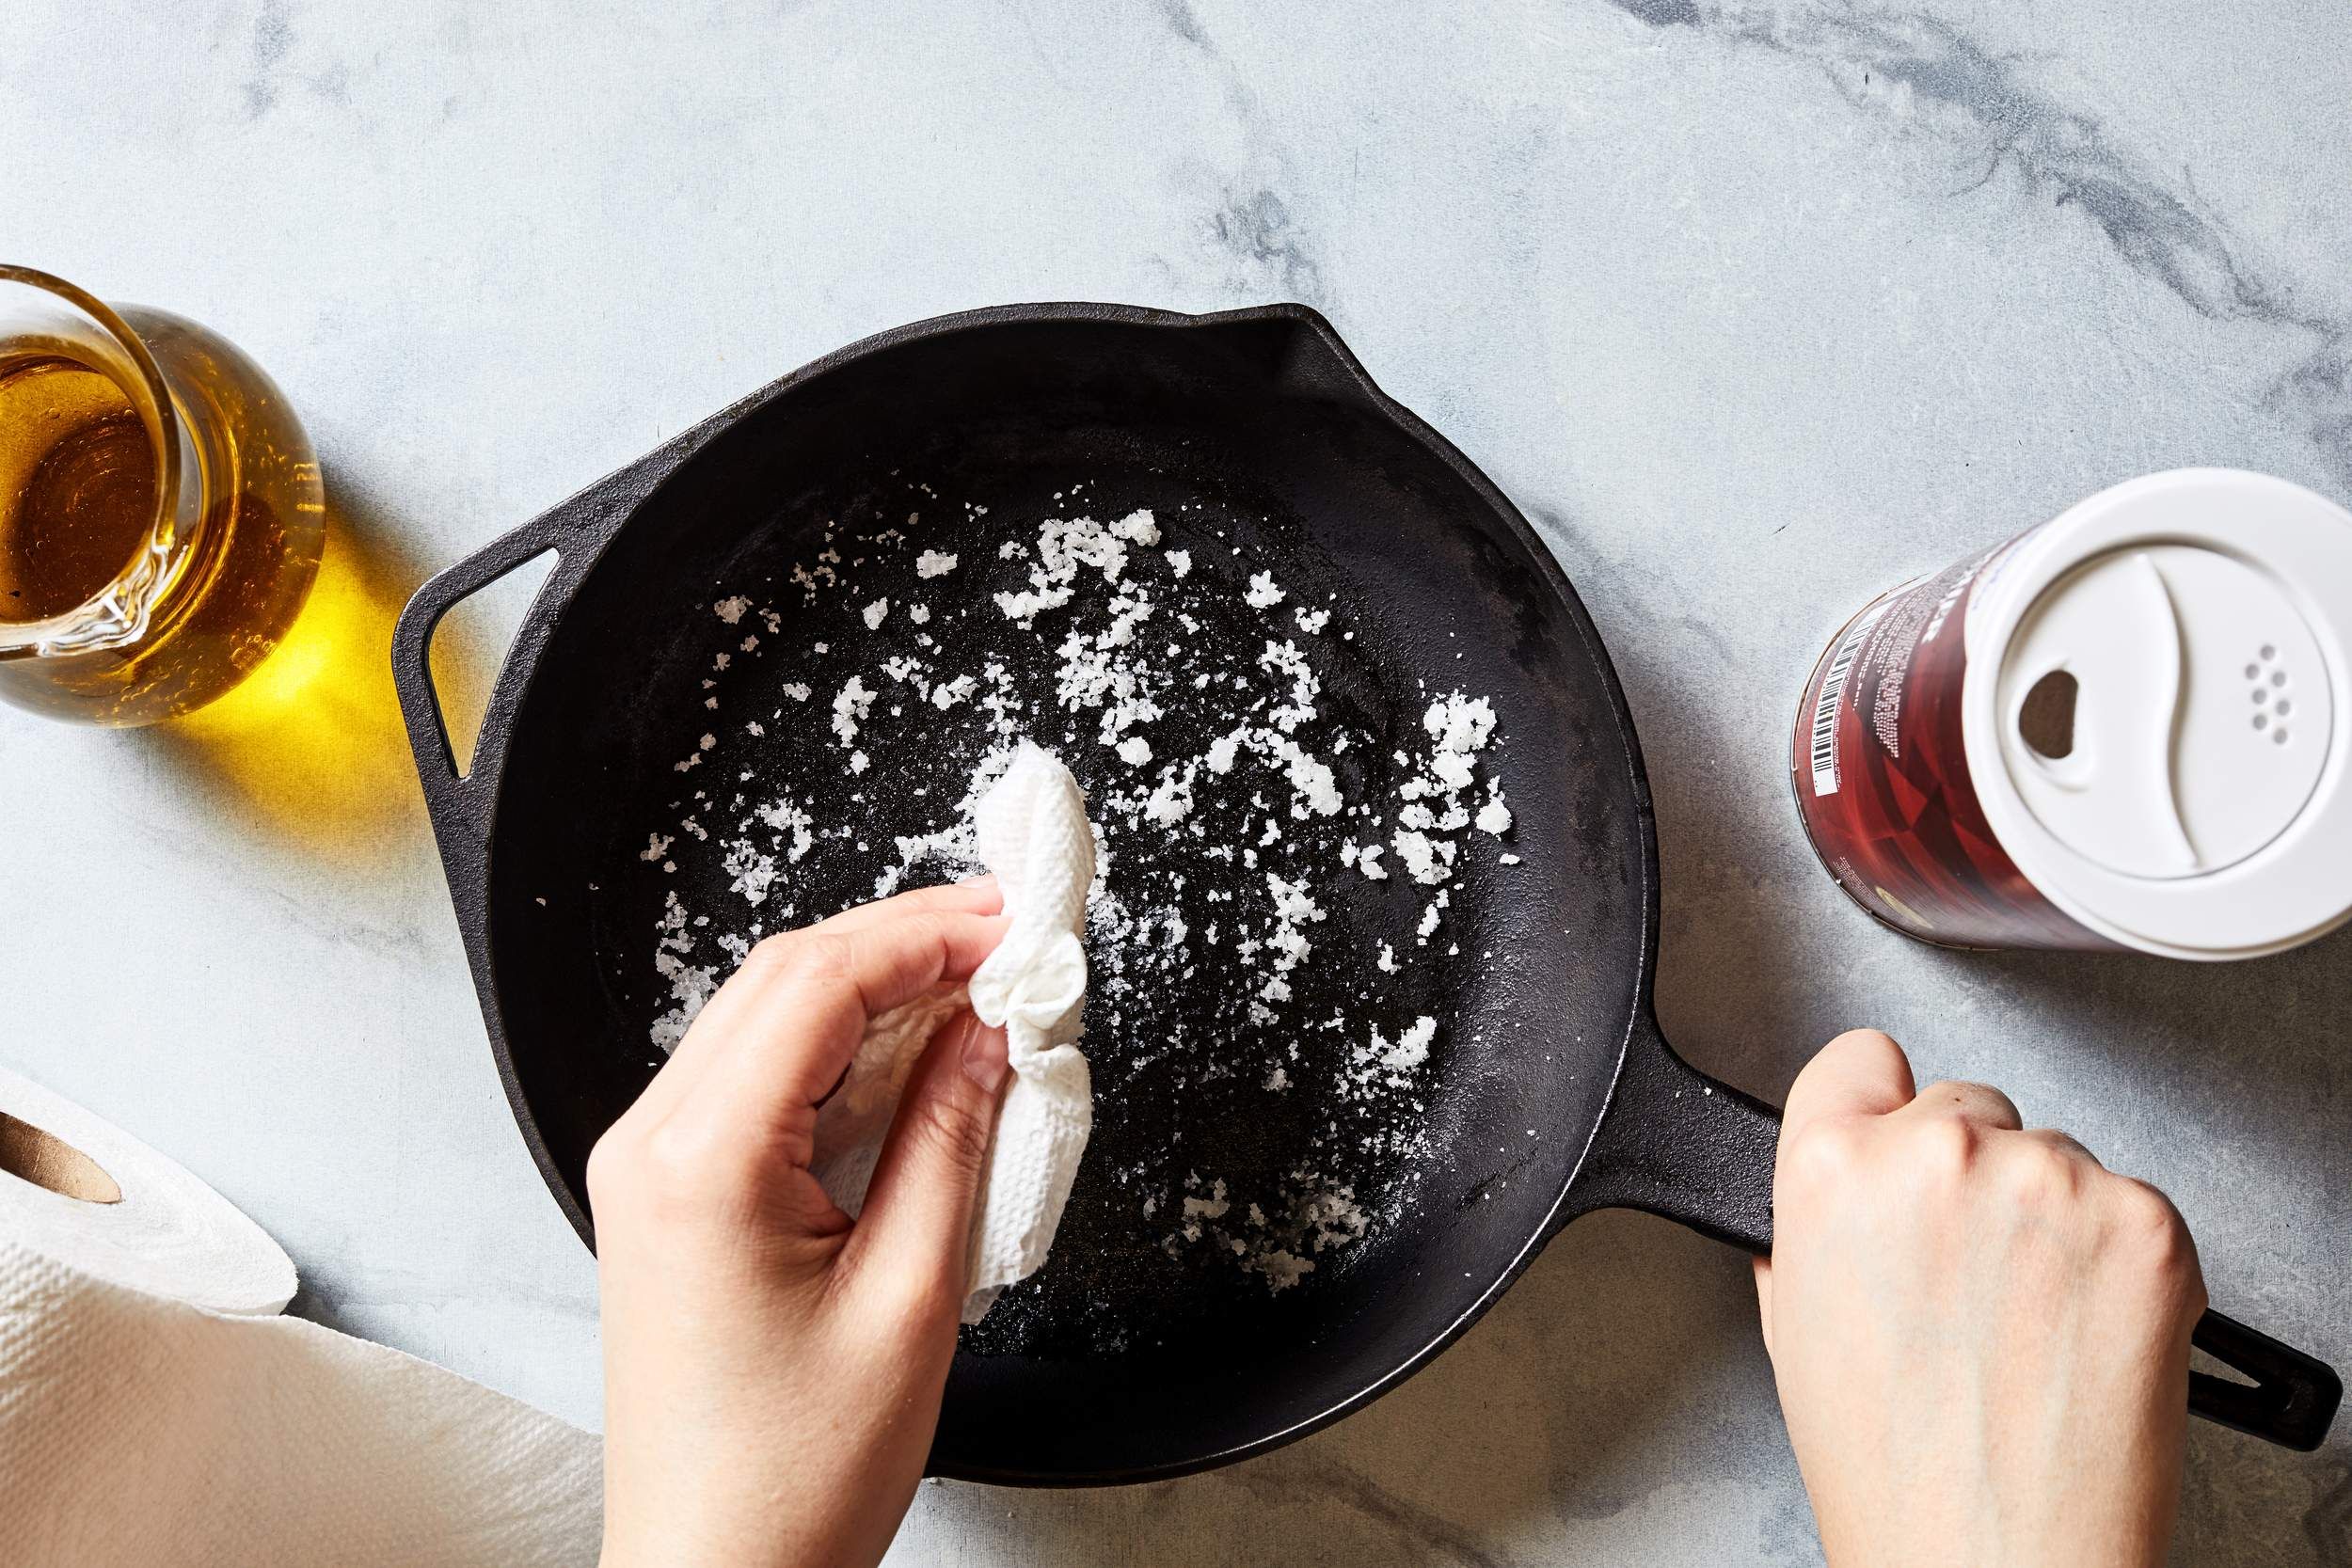 Gunakan bahan alami untuk membersihkan alat masak.